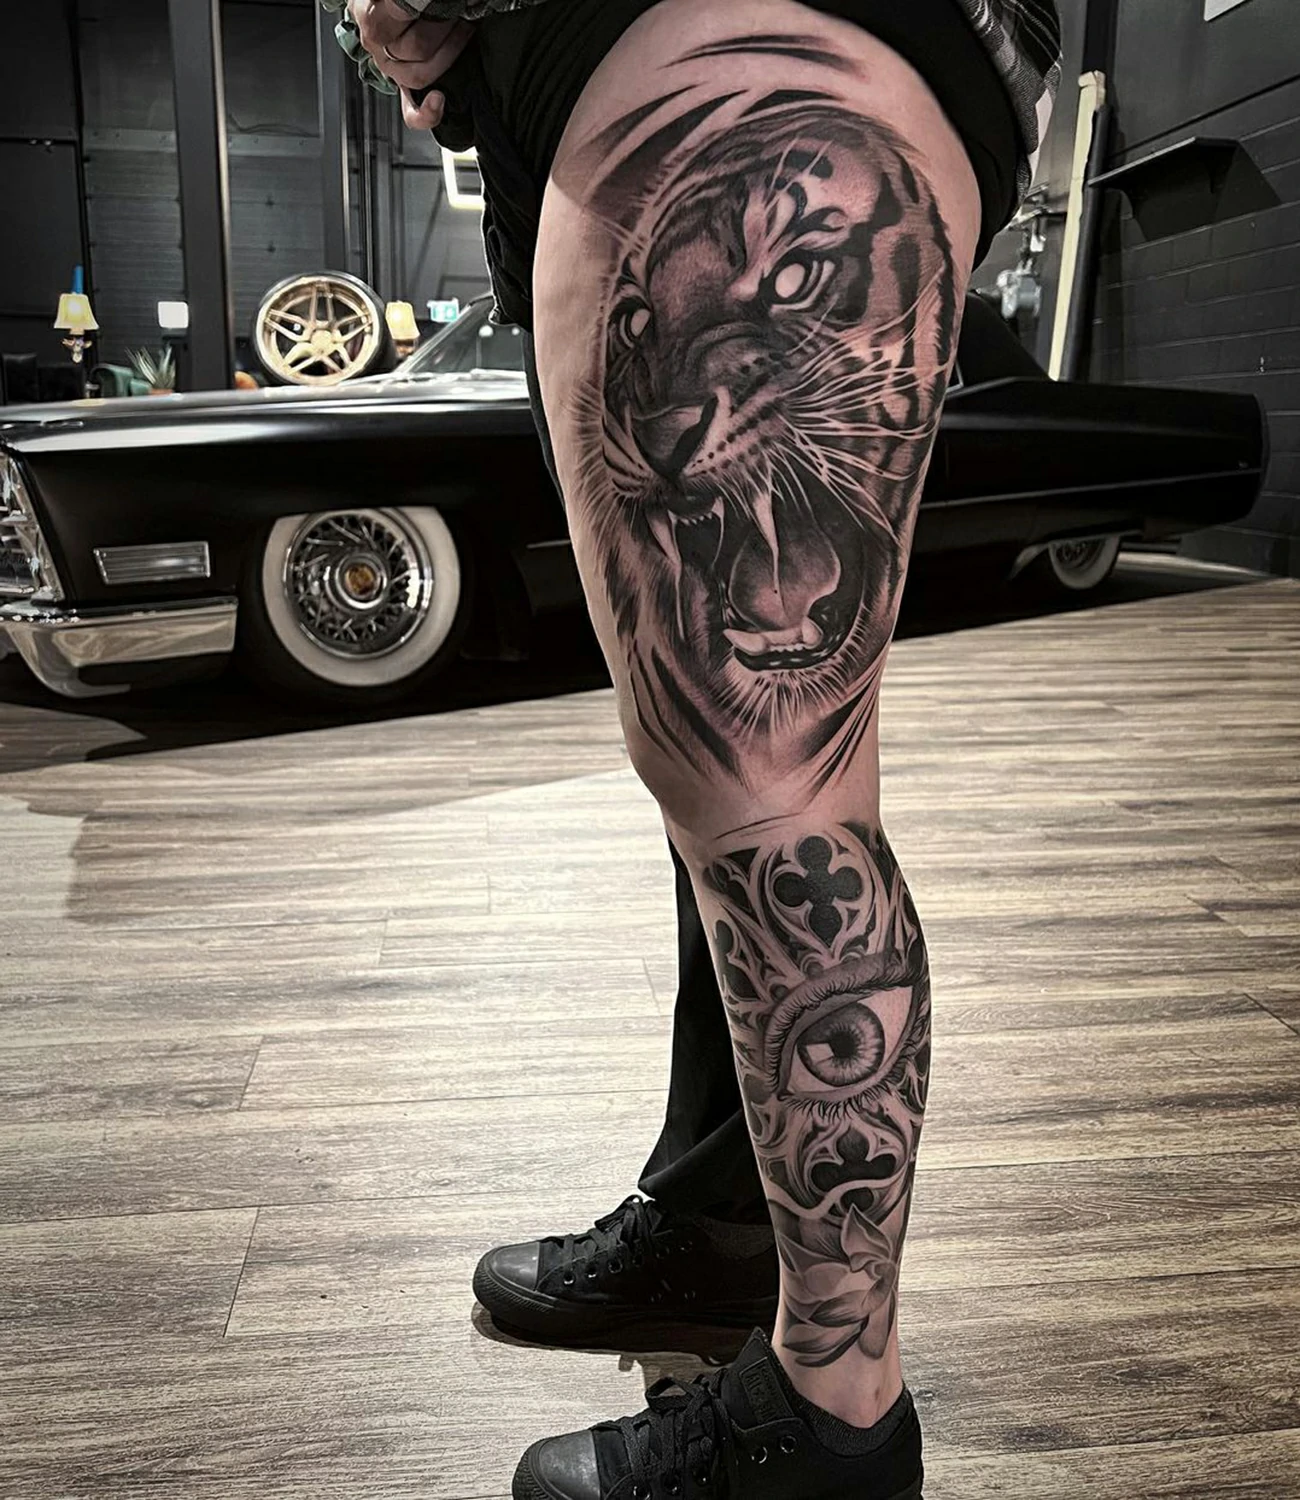 Tiger Leg Tattoo